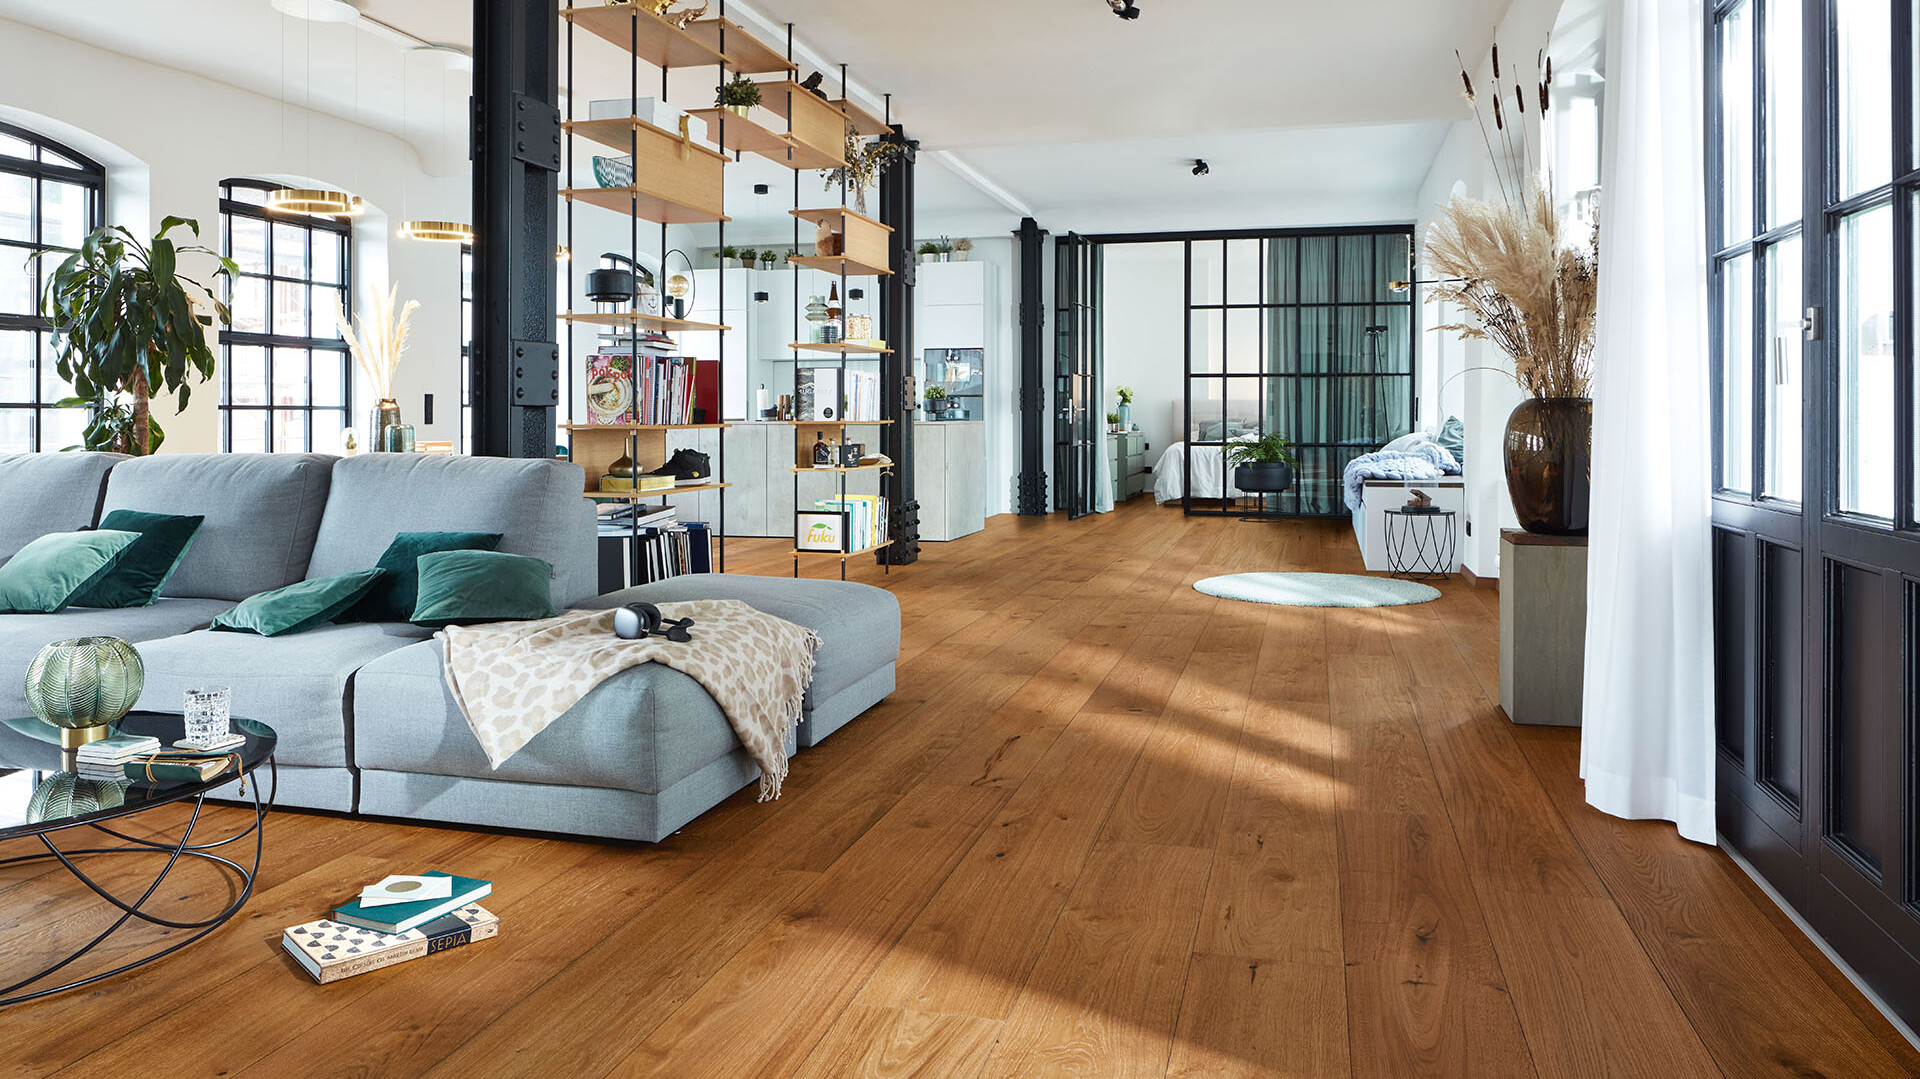 Lindura-Holzboden in Eiche authentic in einem Wohnzimmer